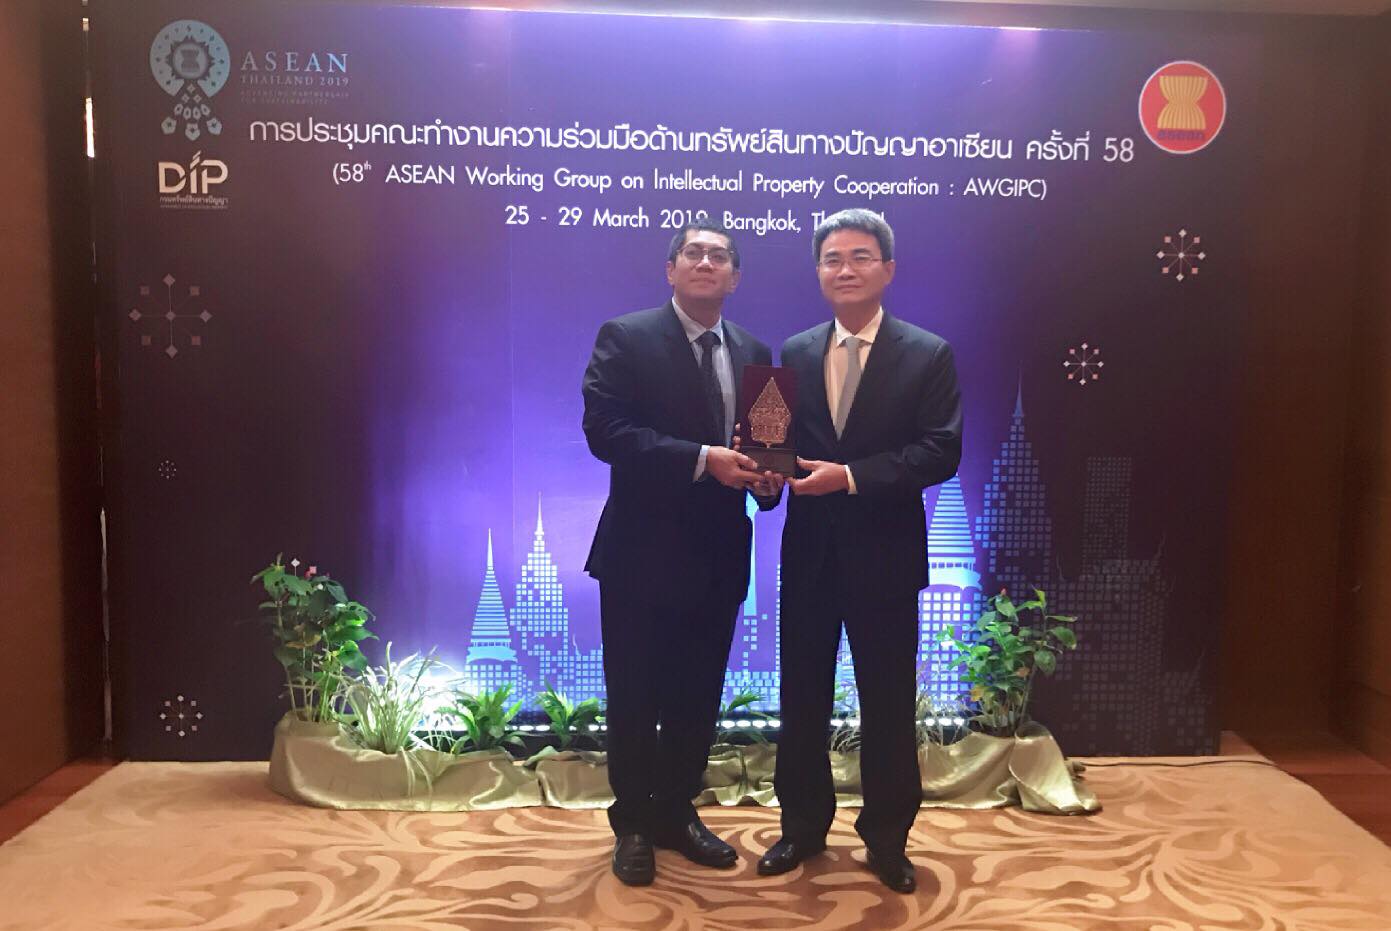 Những đóng góp của Cục Sở hữu trí tuệ trong quan hệ hợp tác Asean về sở hữu trí tuệ